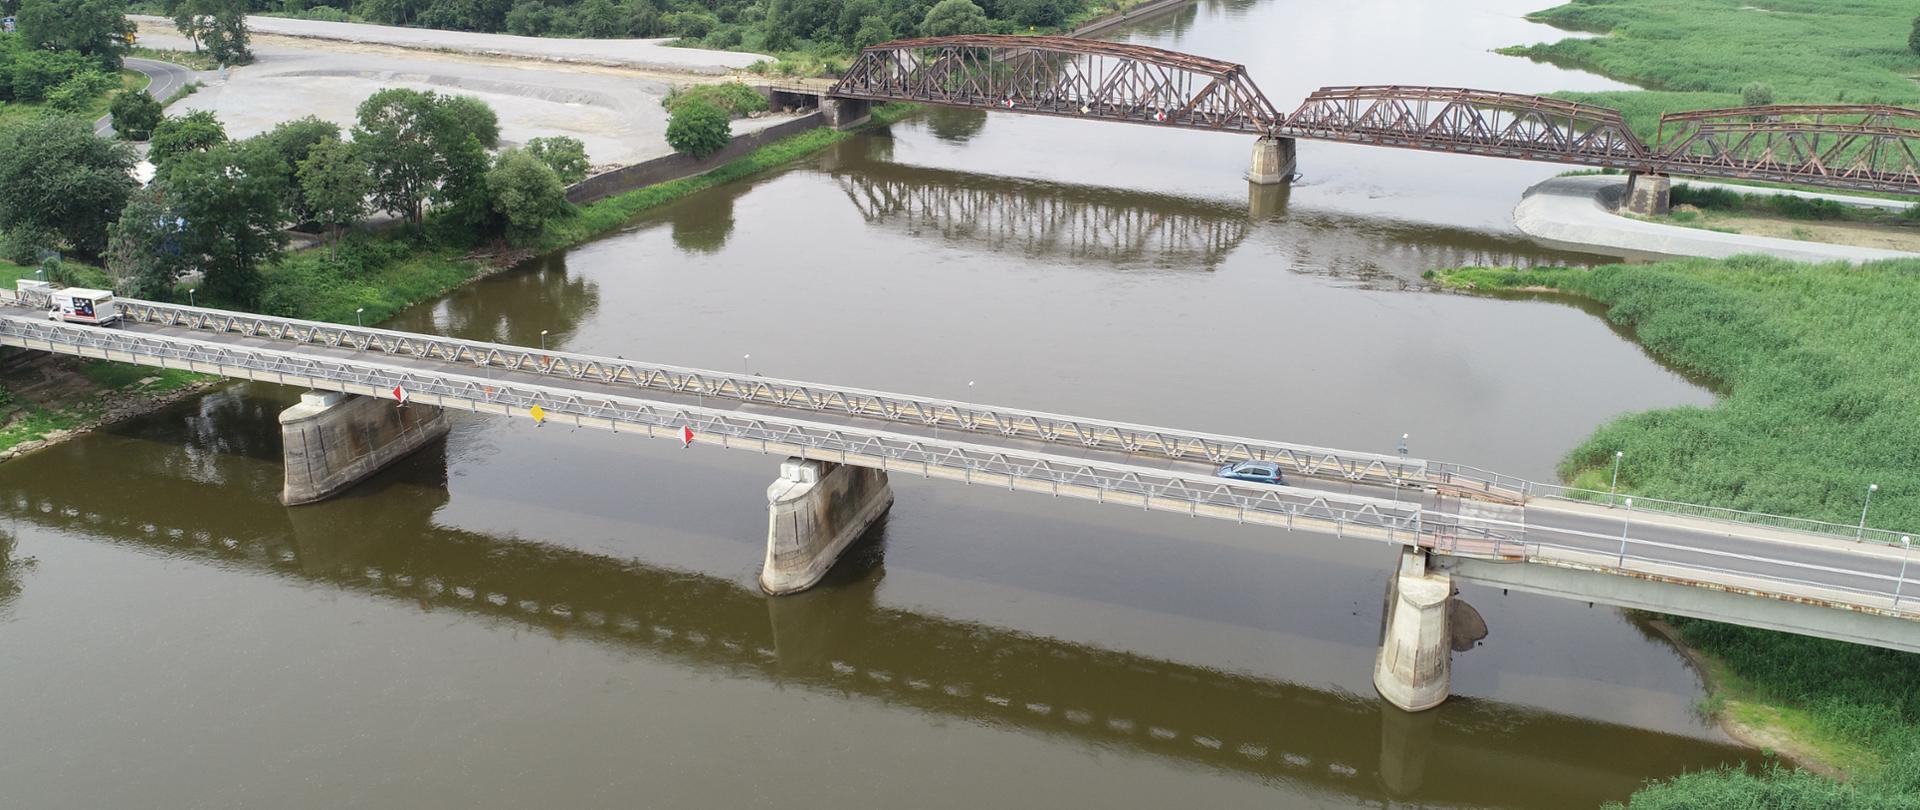 Na zdjęciu widoczne są dwa mosty nad rzeką, jeden drogowy drugi kolejowy, otoczone zielenią.